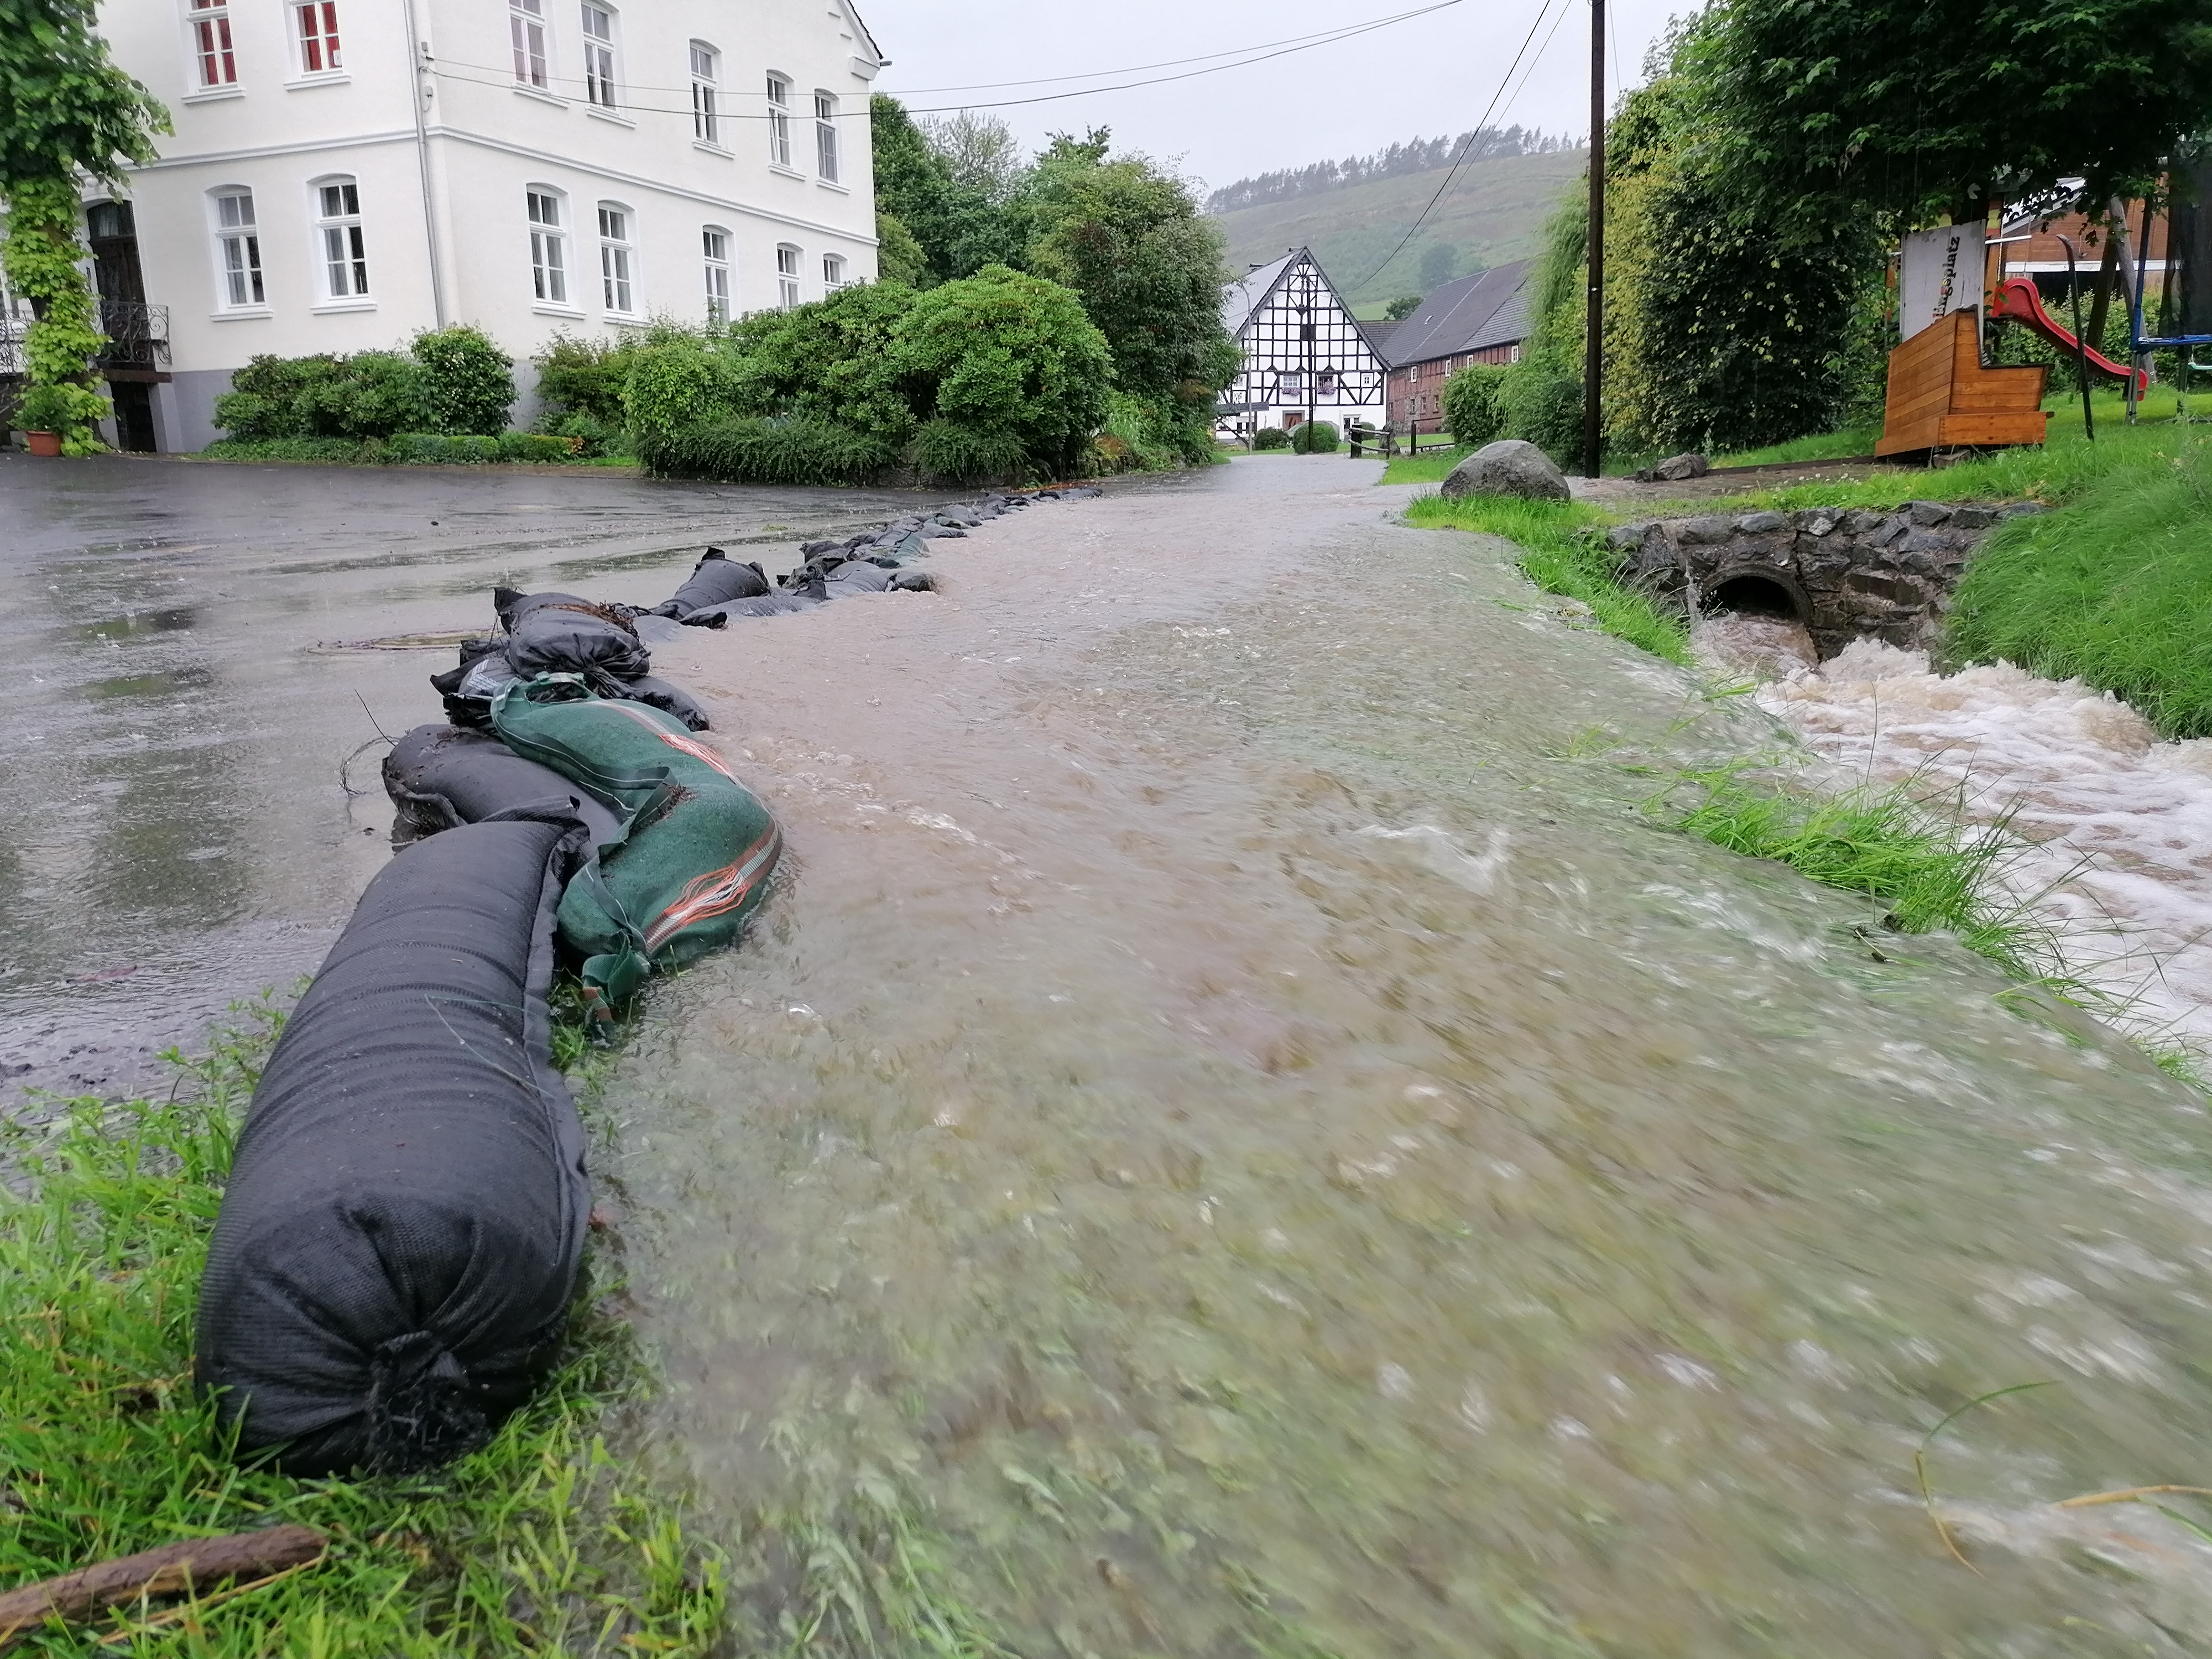 Überflutete Straße in Visbeck